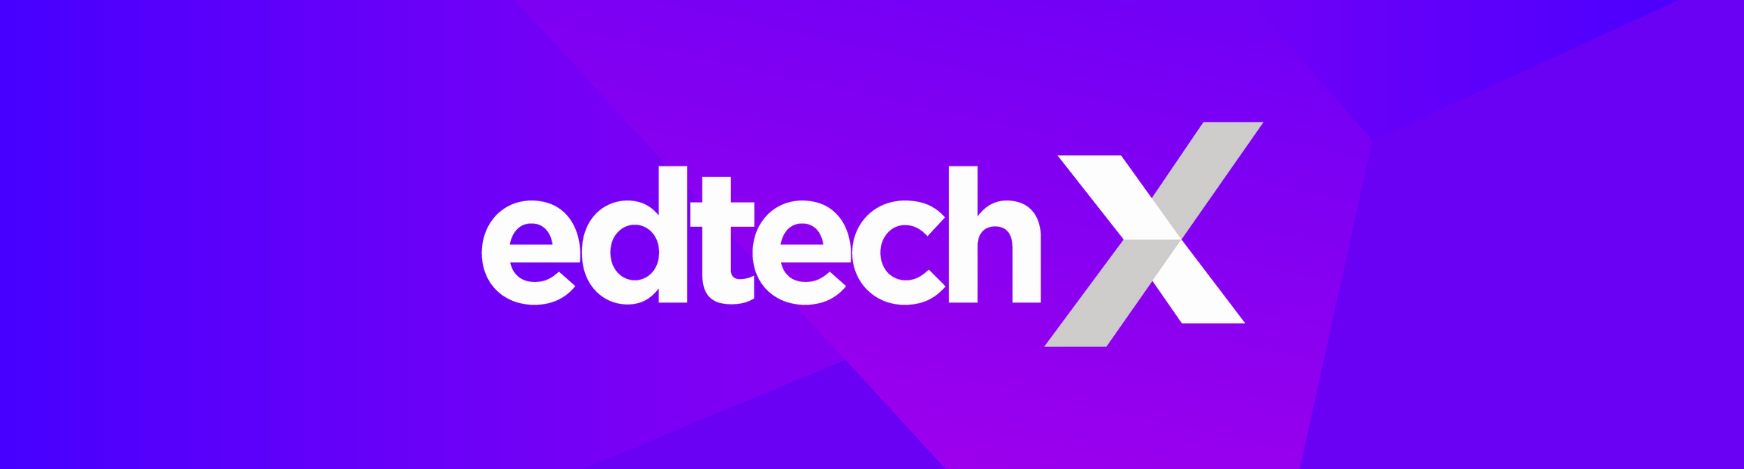 EdTechX Banner